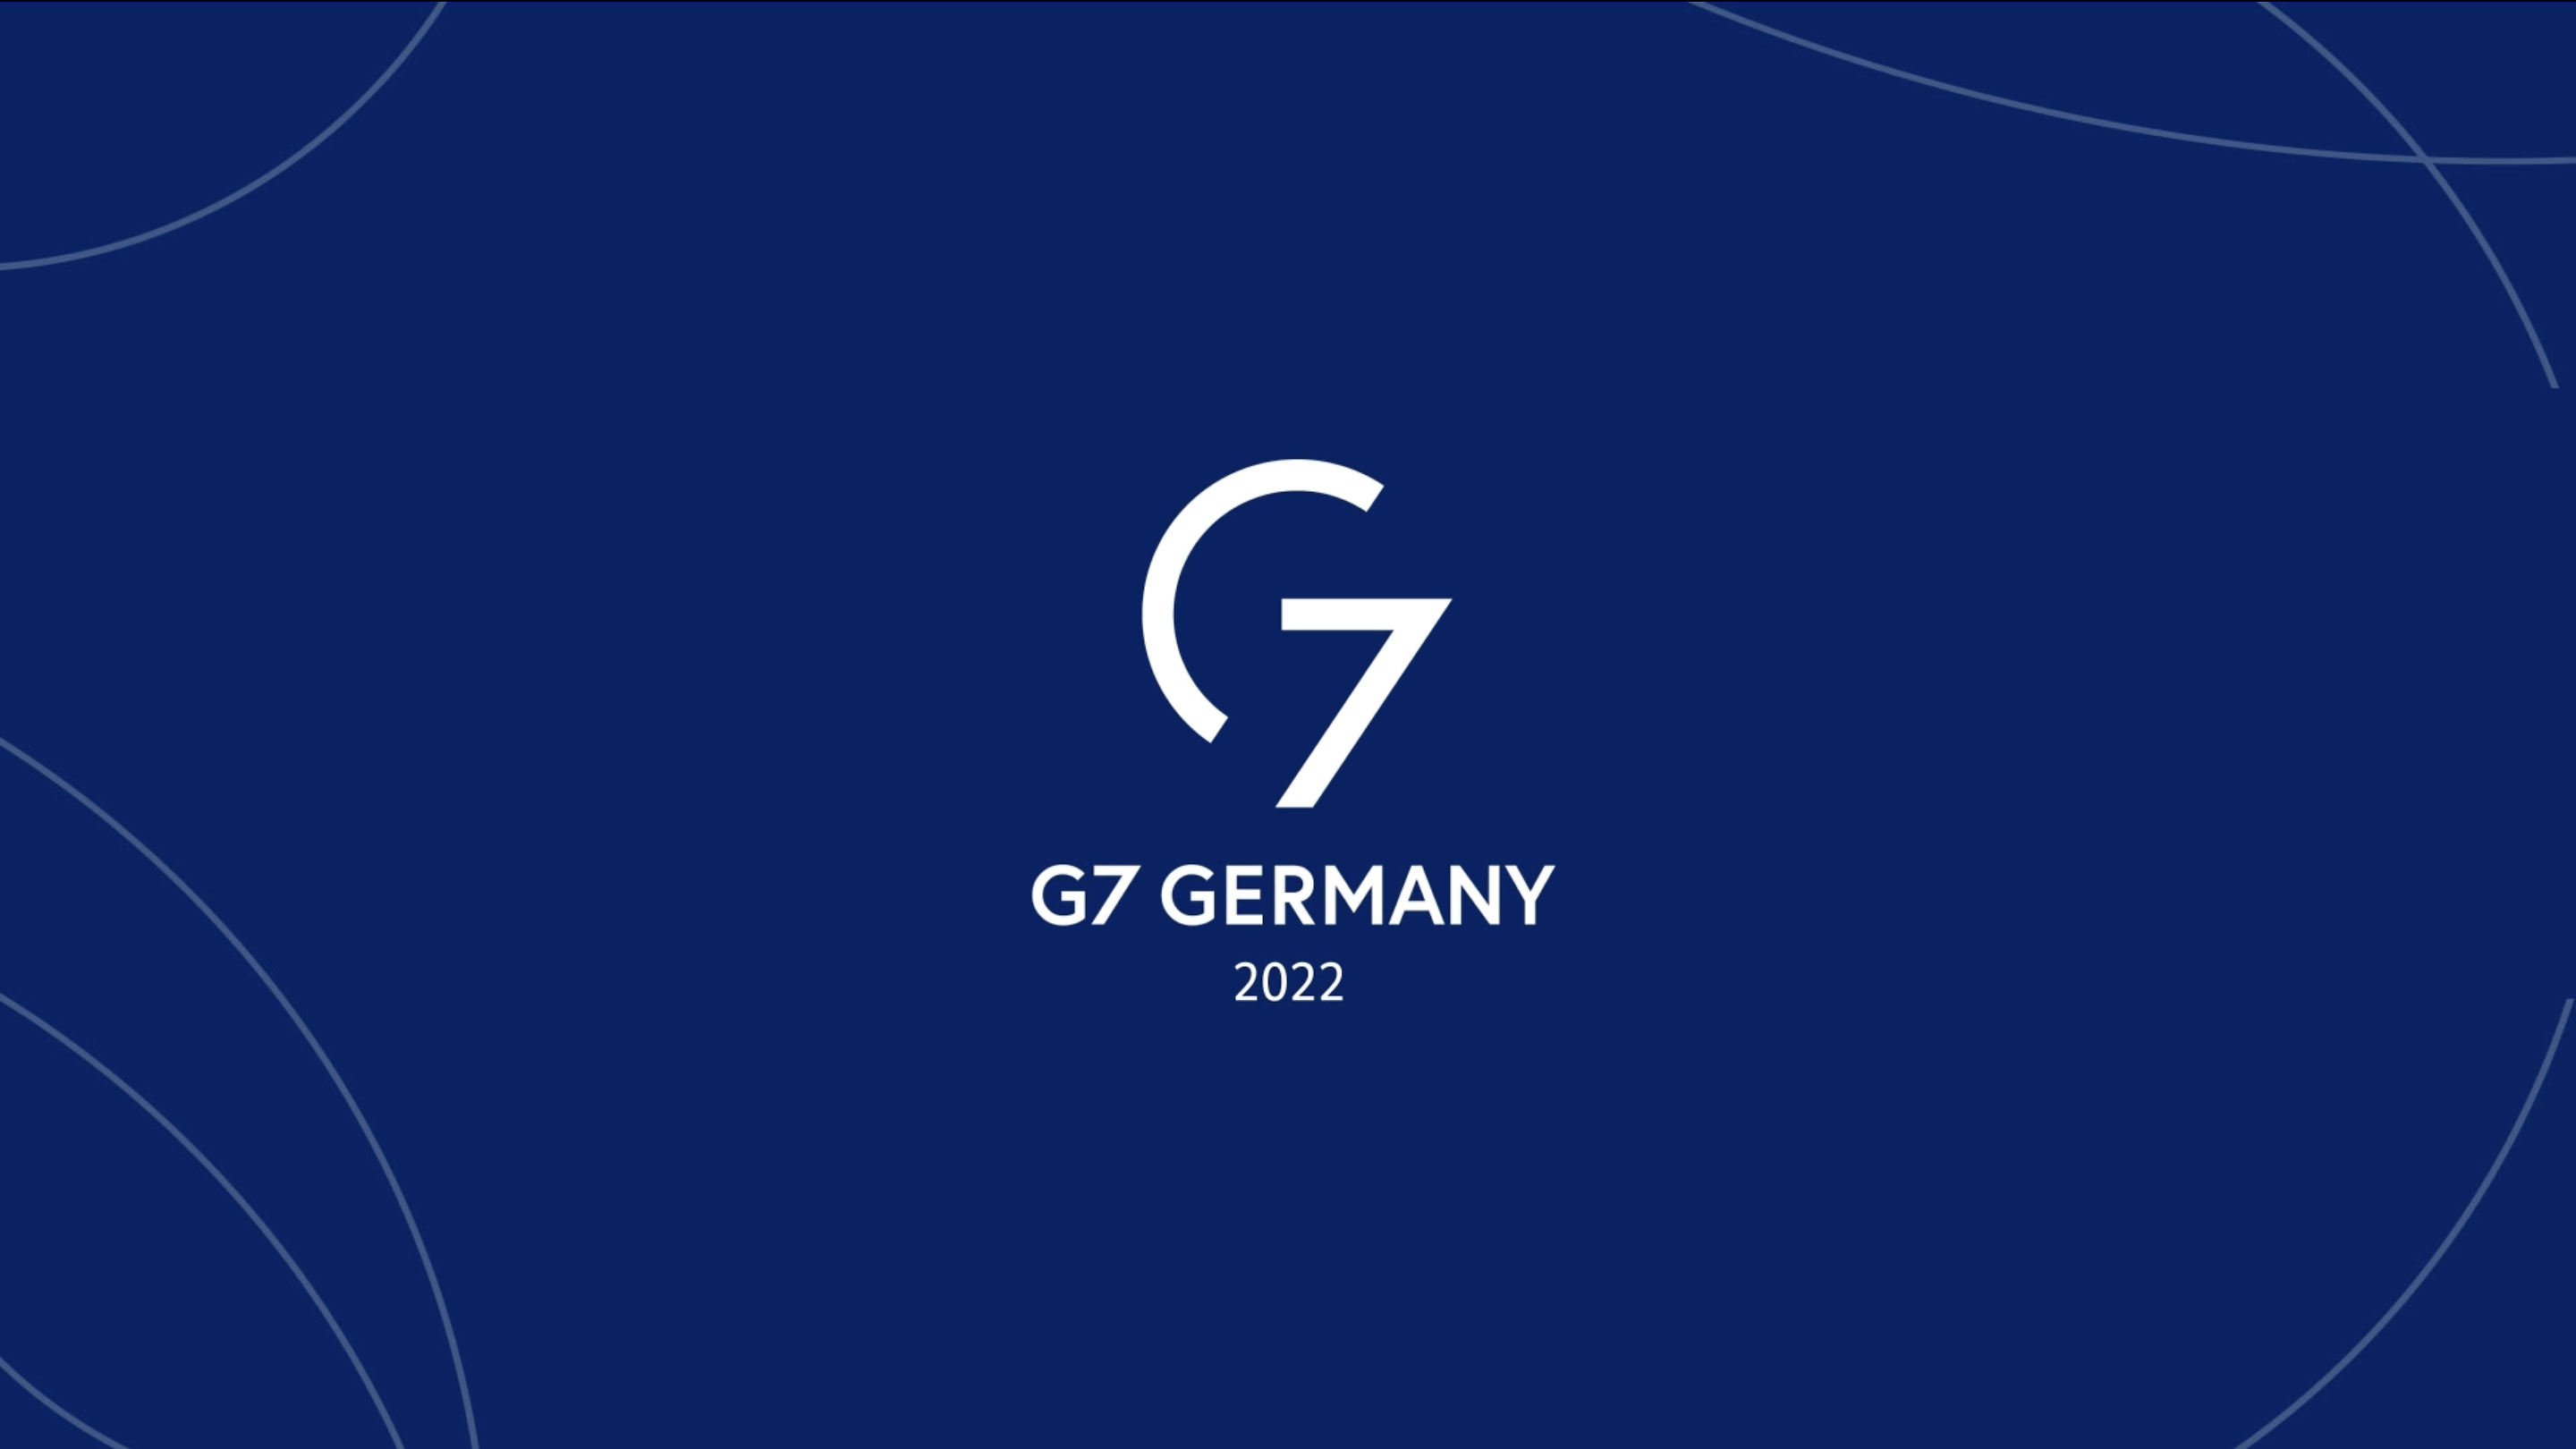 Weißer Schriftzug auf blauem Grund: G7 Germany 2022 